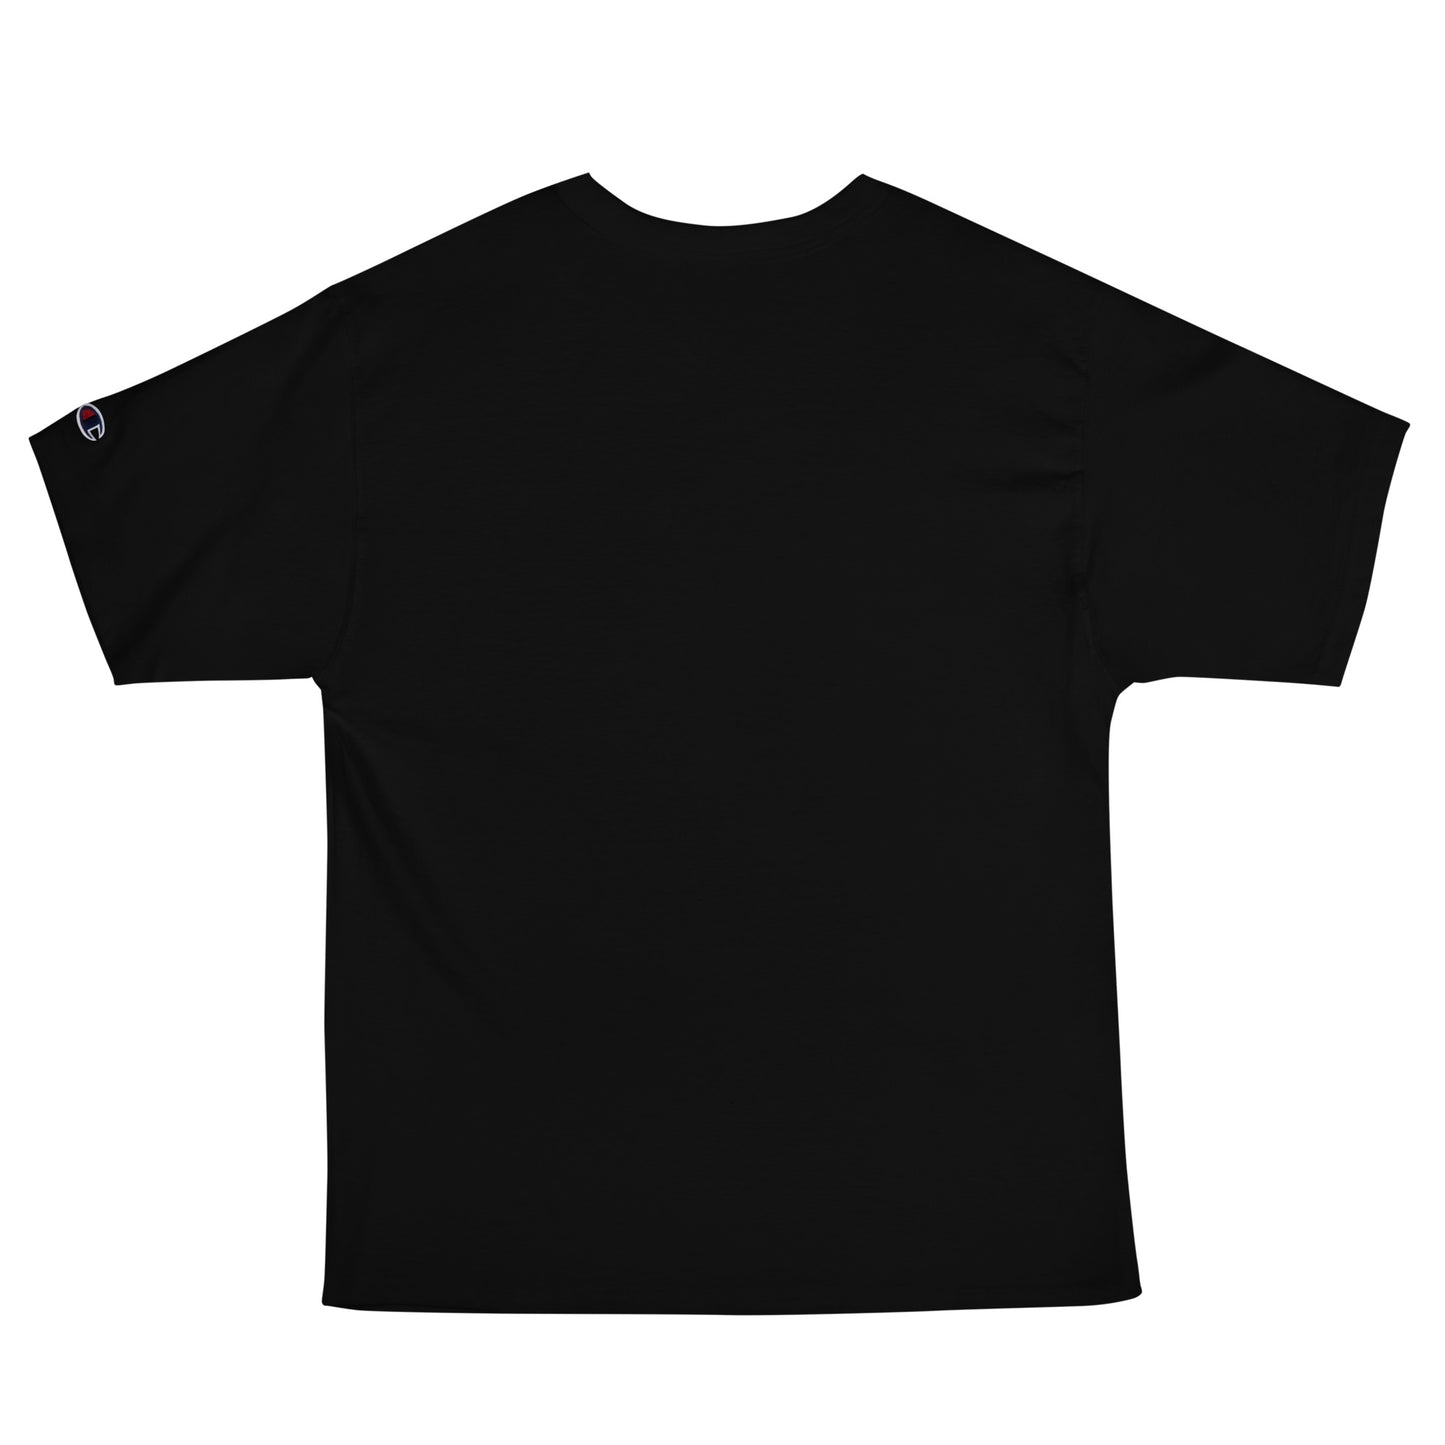 O153 - T-shirt/Oversize type/Champion (Pony : Black)